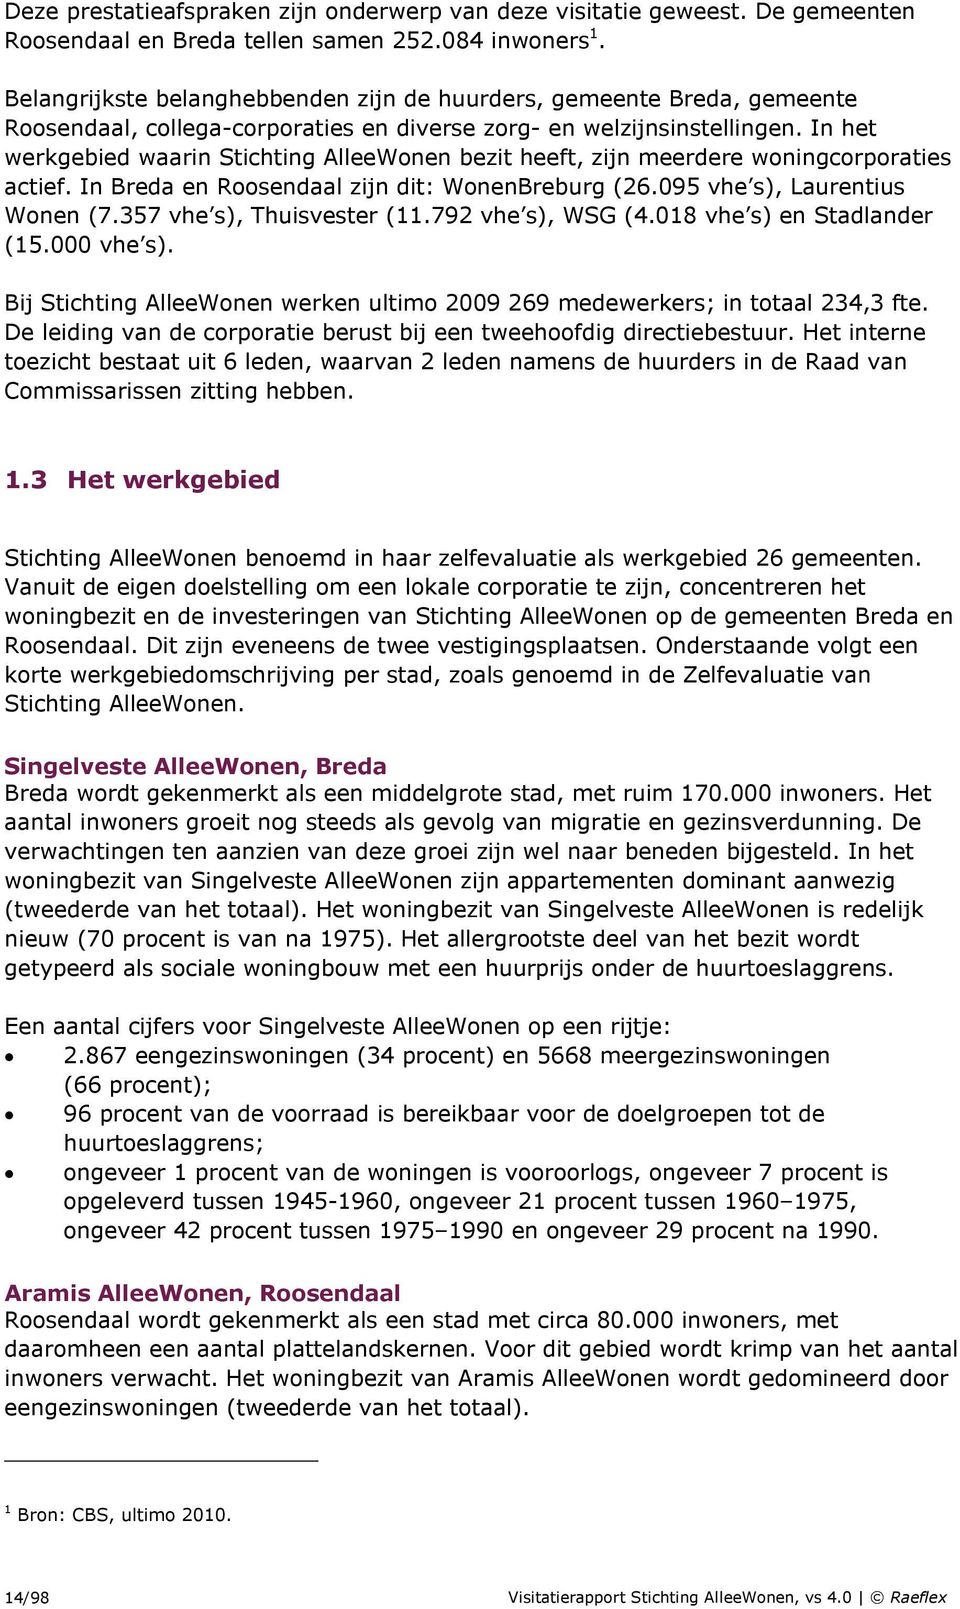 In het werkgebied waarin Stichting AlleeWonen bezit heeft, zijn meerdere woningcorporaties actief. In Breda en Roosendaal zijn dit: WonenBreburg (26.095 vhe s), Laurentius Wonen (7.